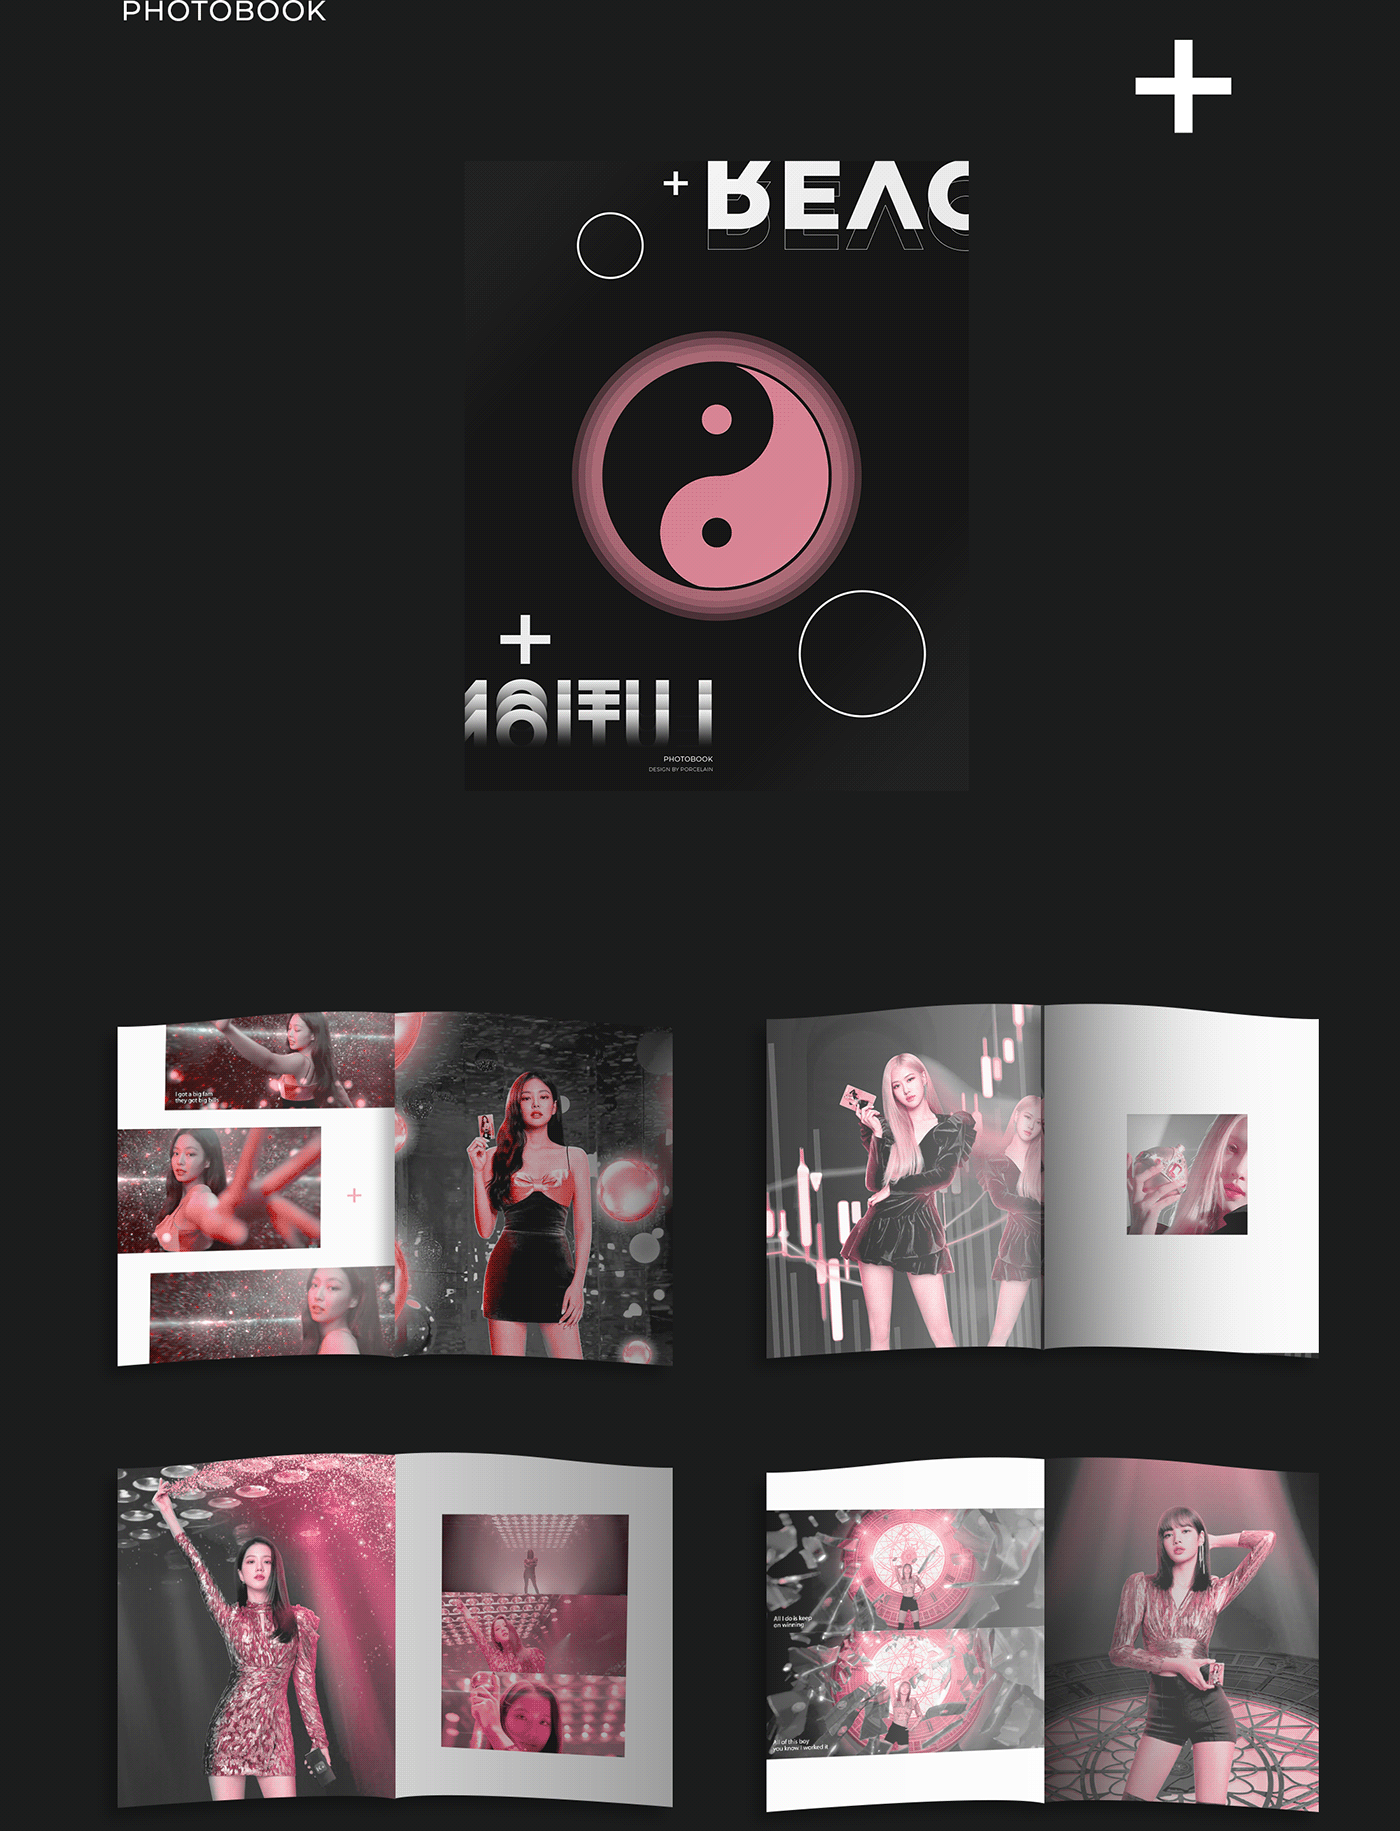 blackpink Design album Album design kpop design album concept music album preview album cd Packaging